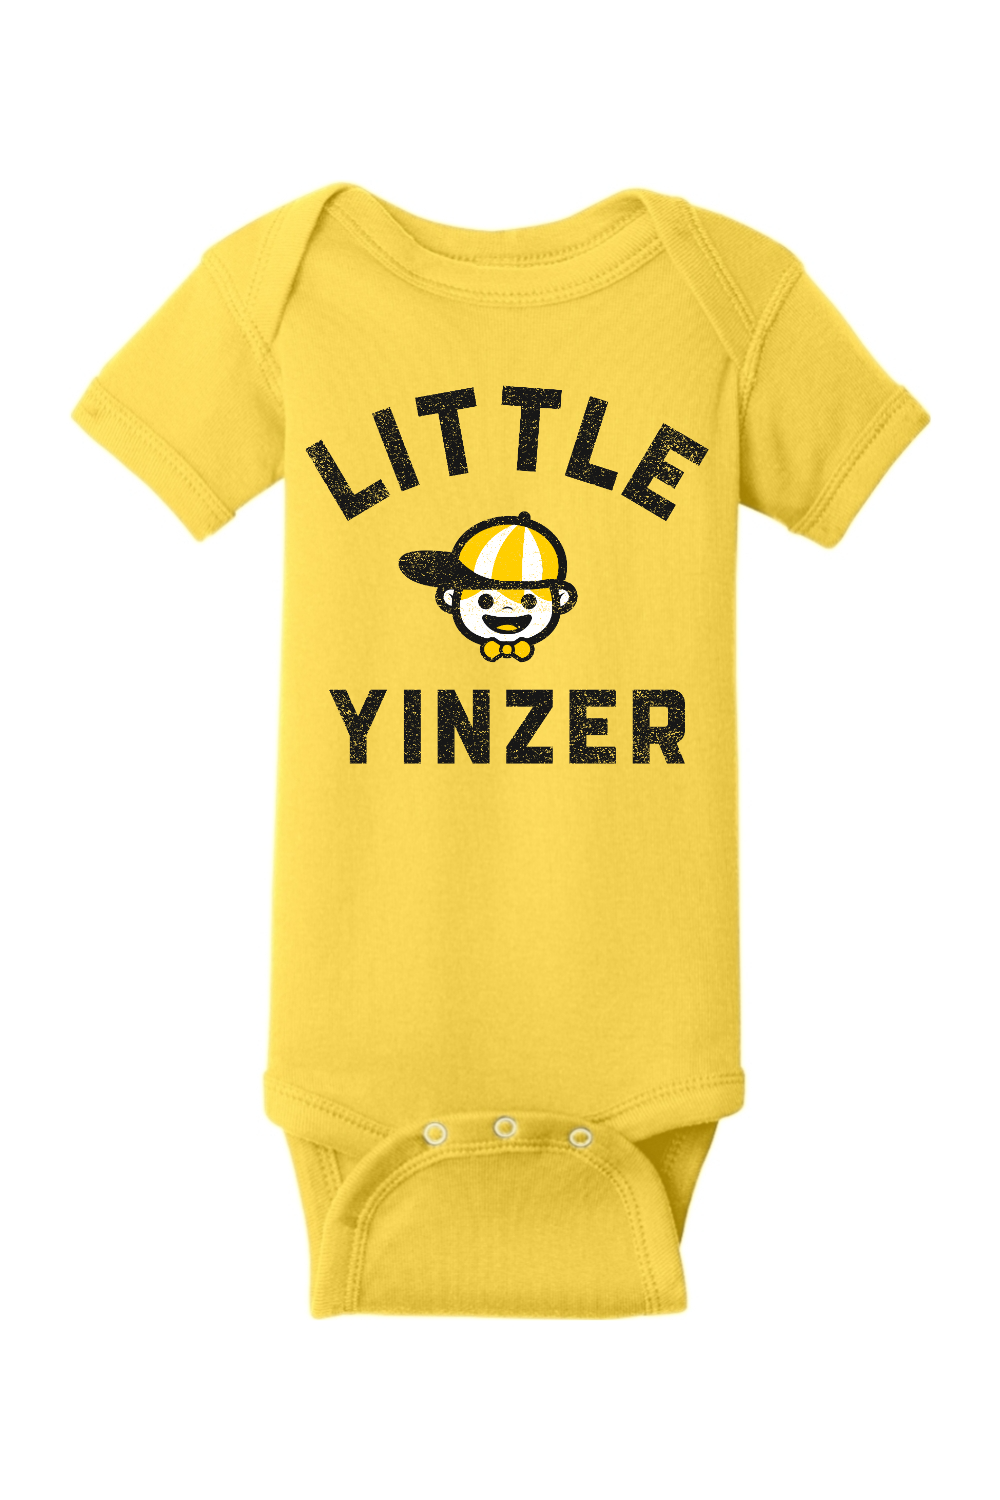 Little Yinzer - Infant Short Sleeve Baby Rib Bodysuit - Yinzylvania